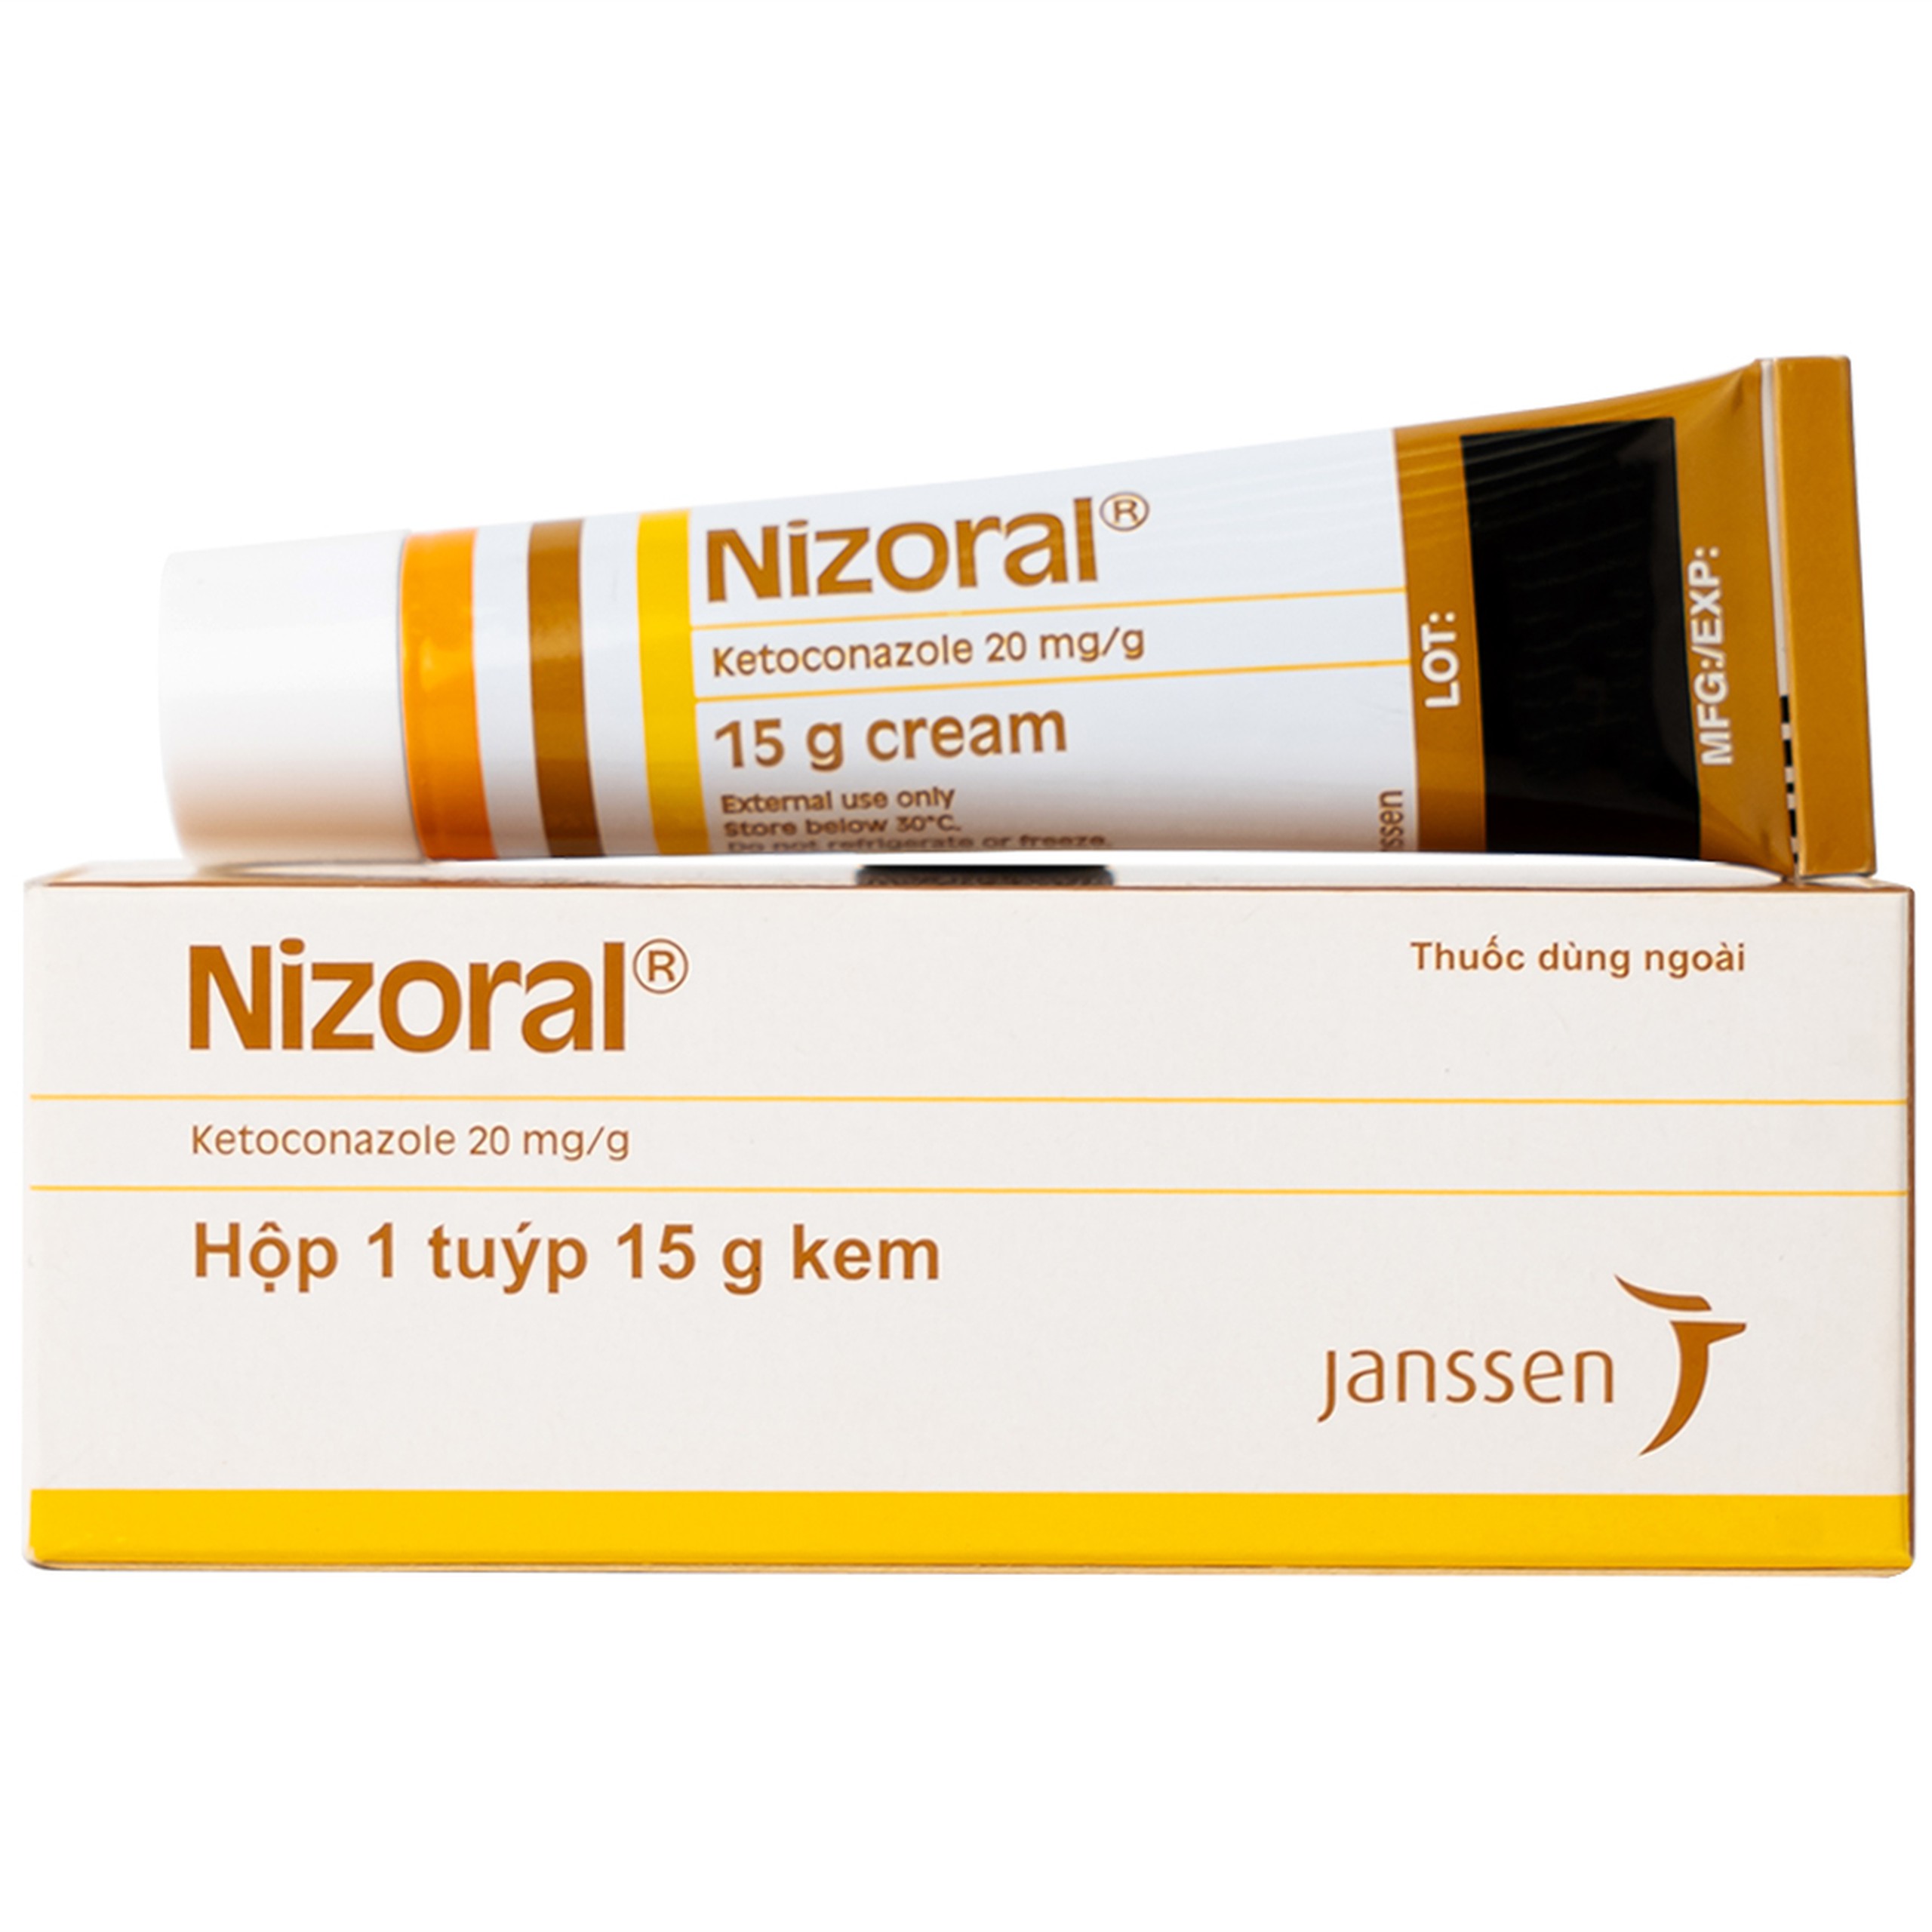 Kem Nizoral Jassen 20mg/g điều trị nhiễm nấm ngoài da (15g) 